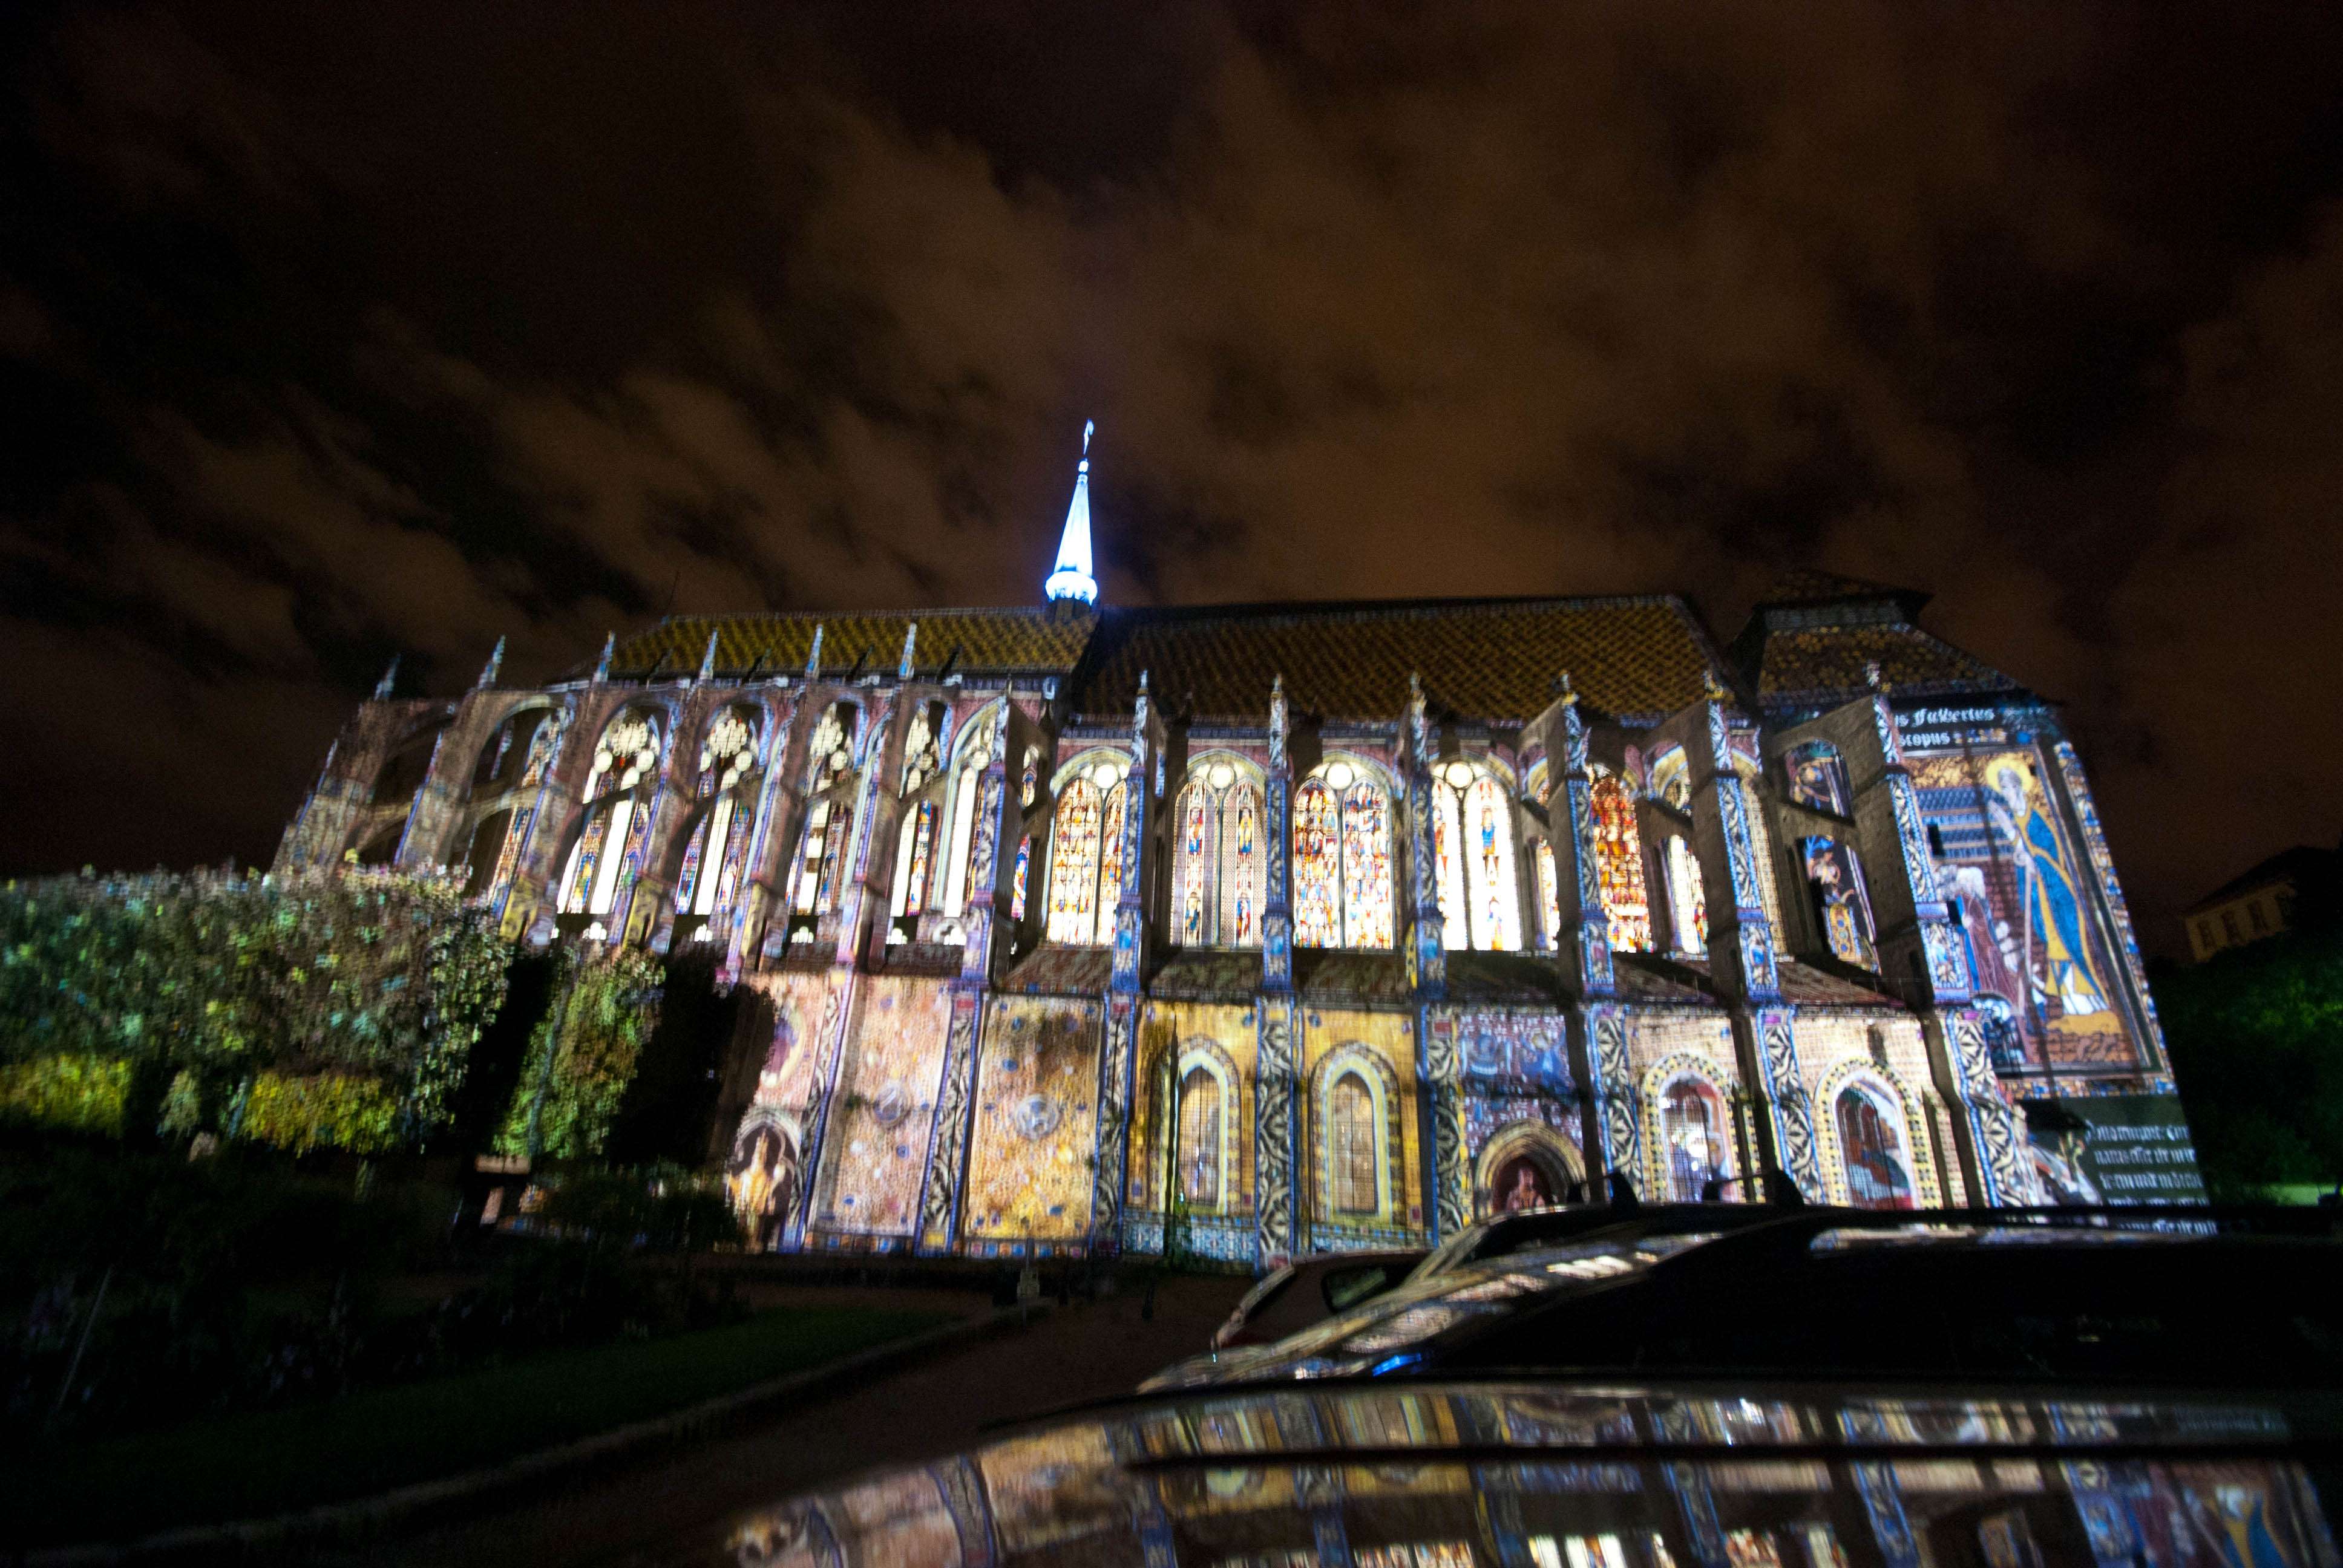 Chartres. Acceso, Alojamiento, Restaurantes y Actividades - Chartres: Arte, espiritualidad y esoterismo. (7)